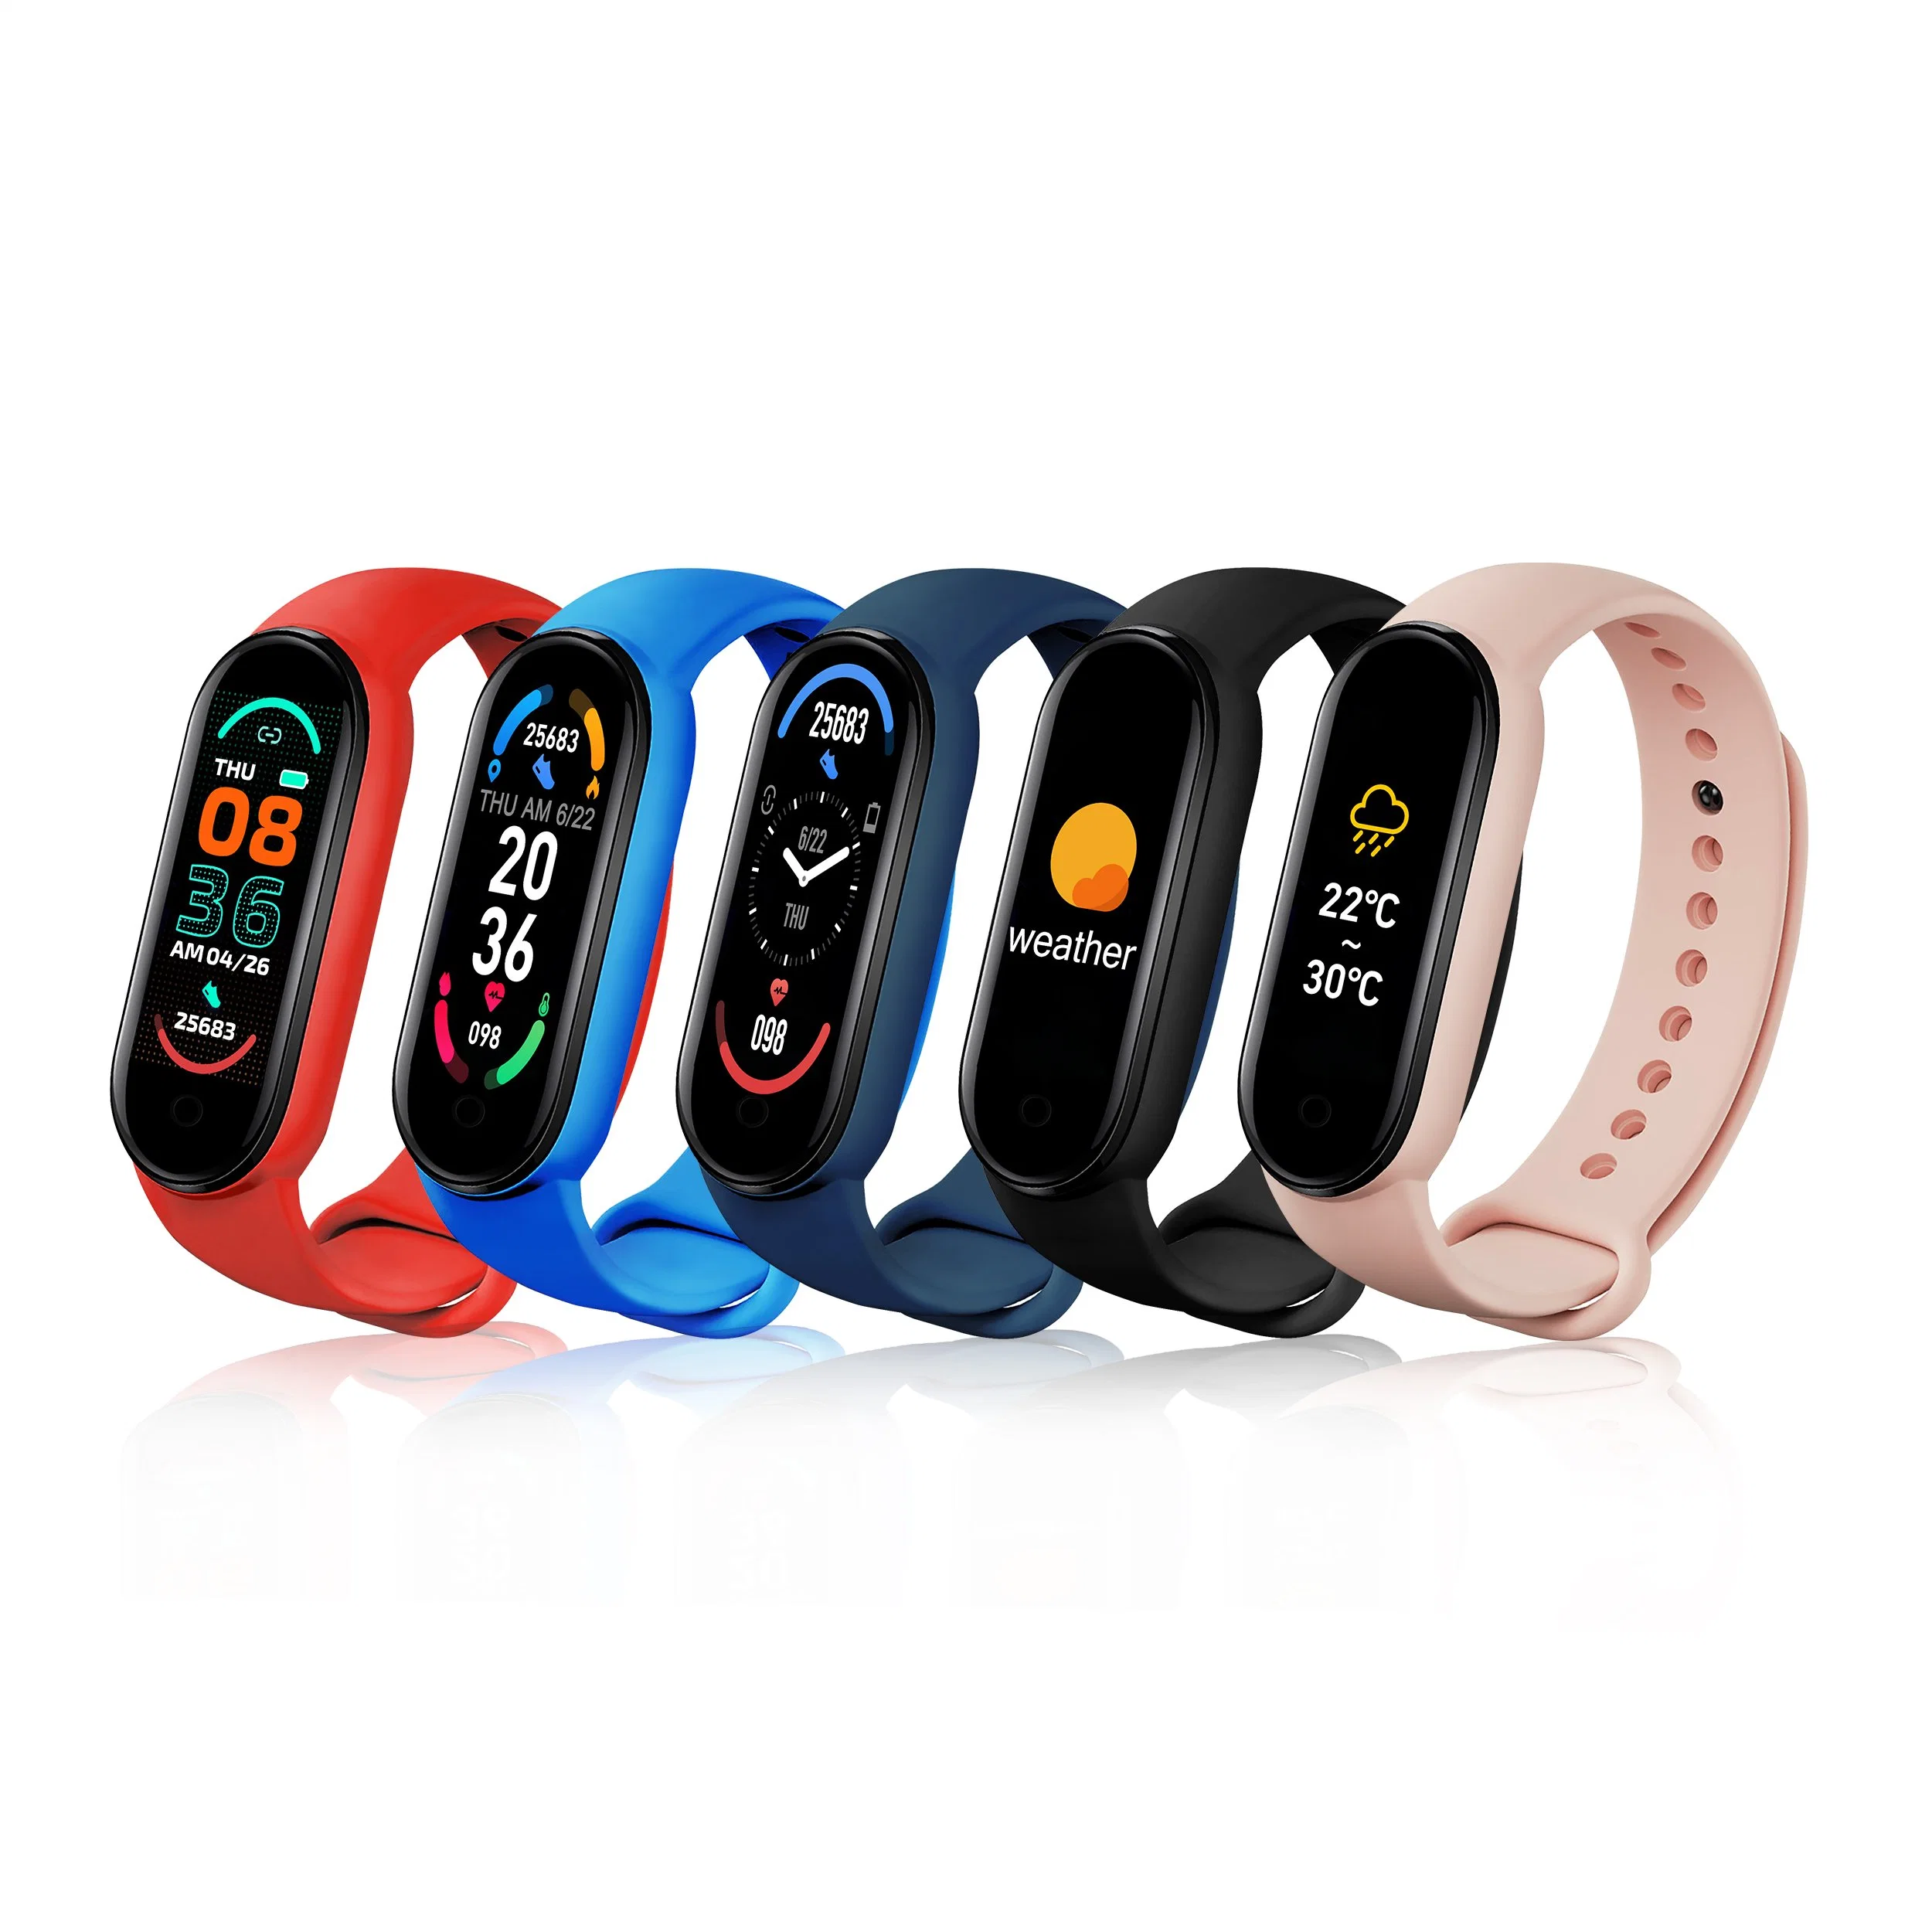 Amazon Hot Selling Smart Watch M6 Лучезапяст Смартчасы M5 Спортивный браслет для измерения артериального давления Фитнес-браслет M6 Smart Band 6